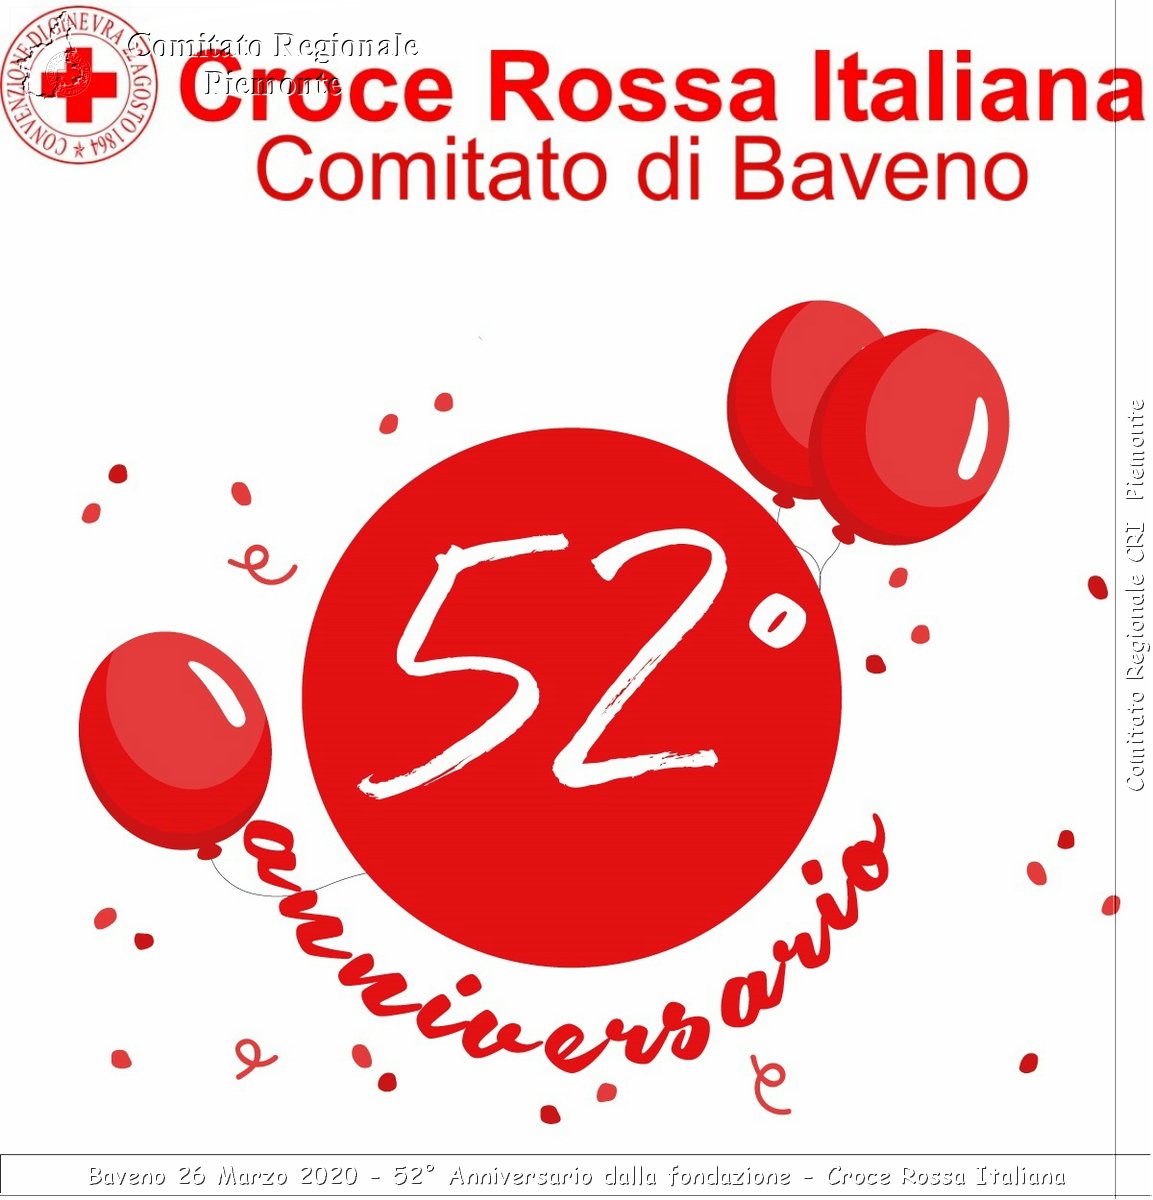 Baveno 26 Marzo 2020 - 52 Anno dalla fondazione - Croce Rossa Italiana